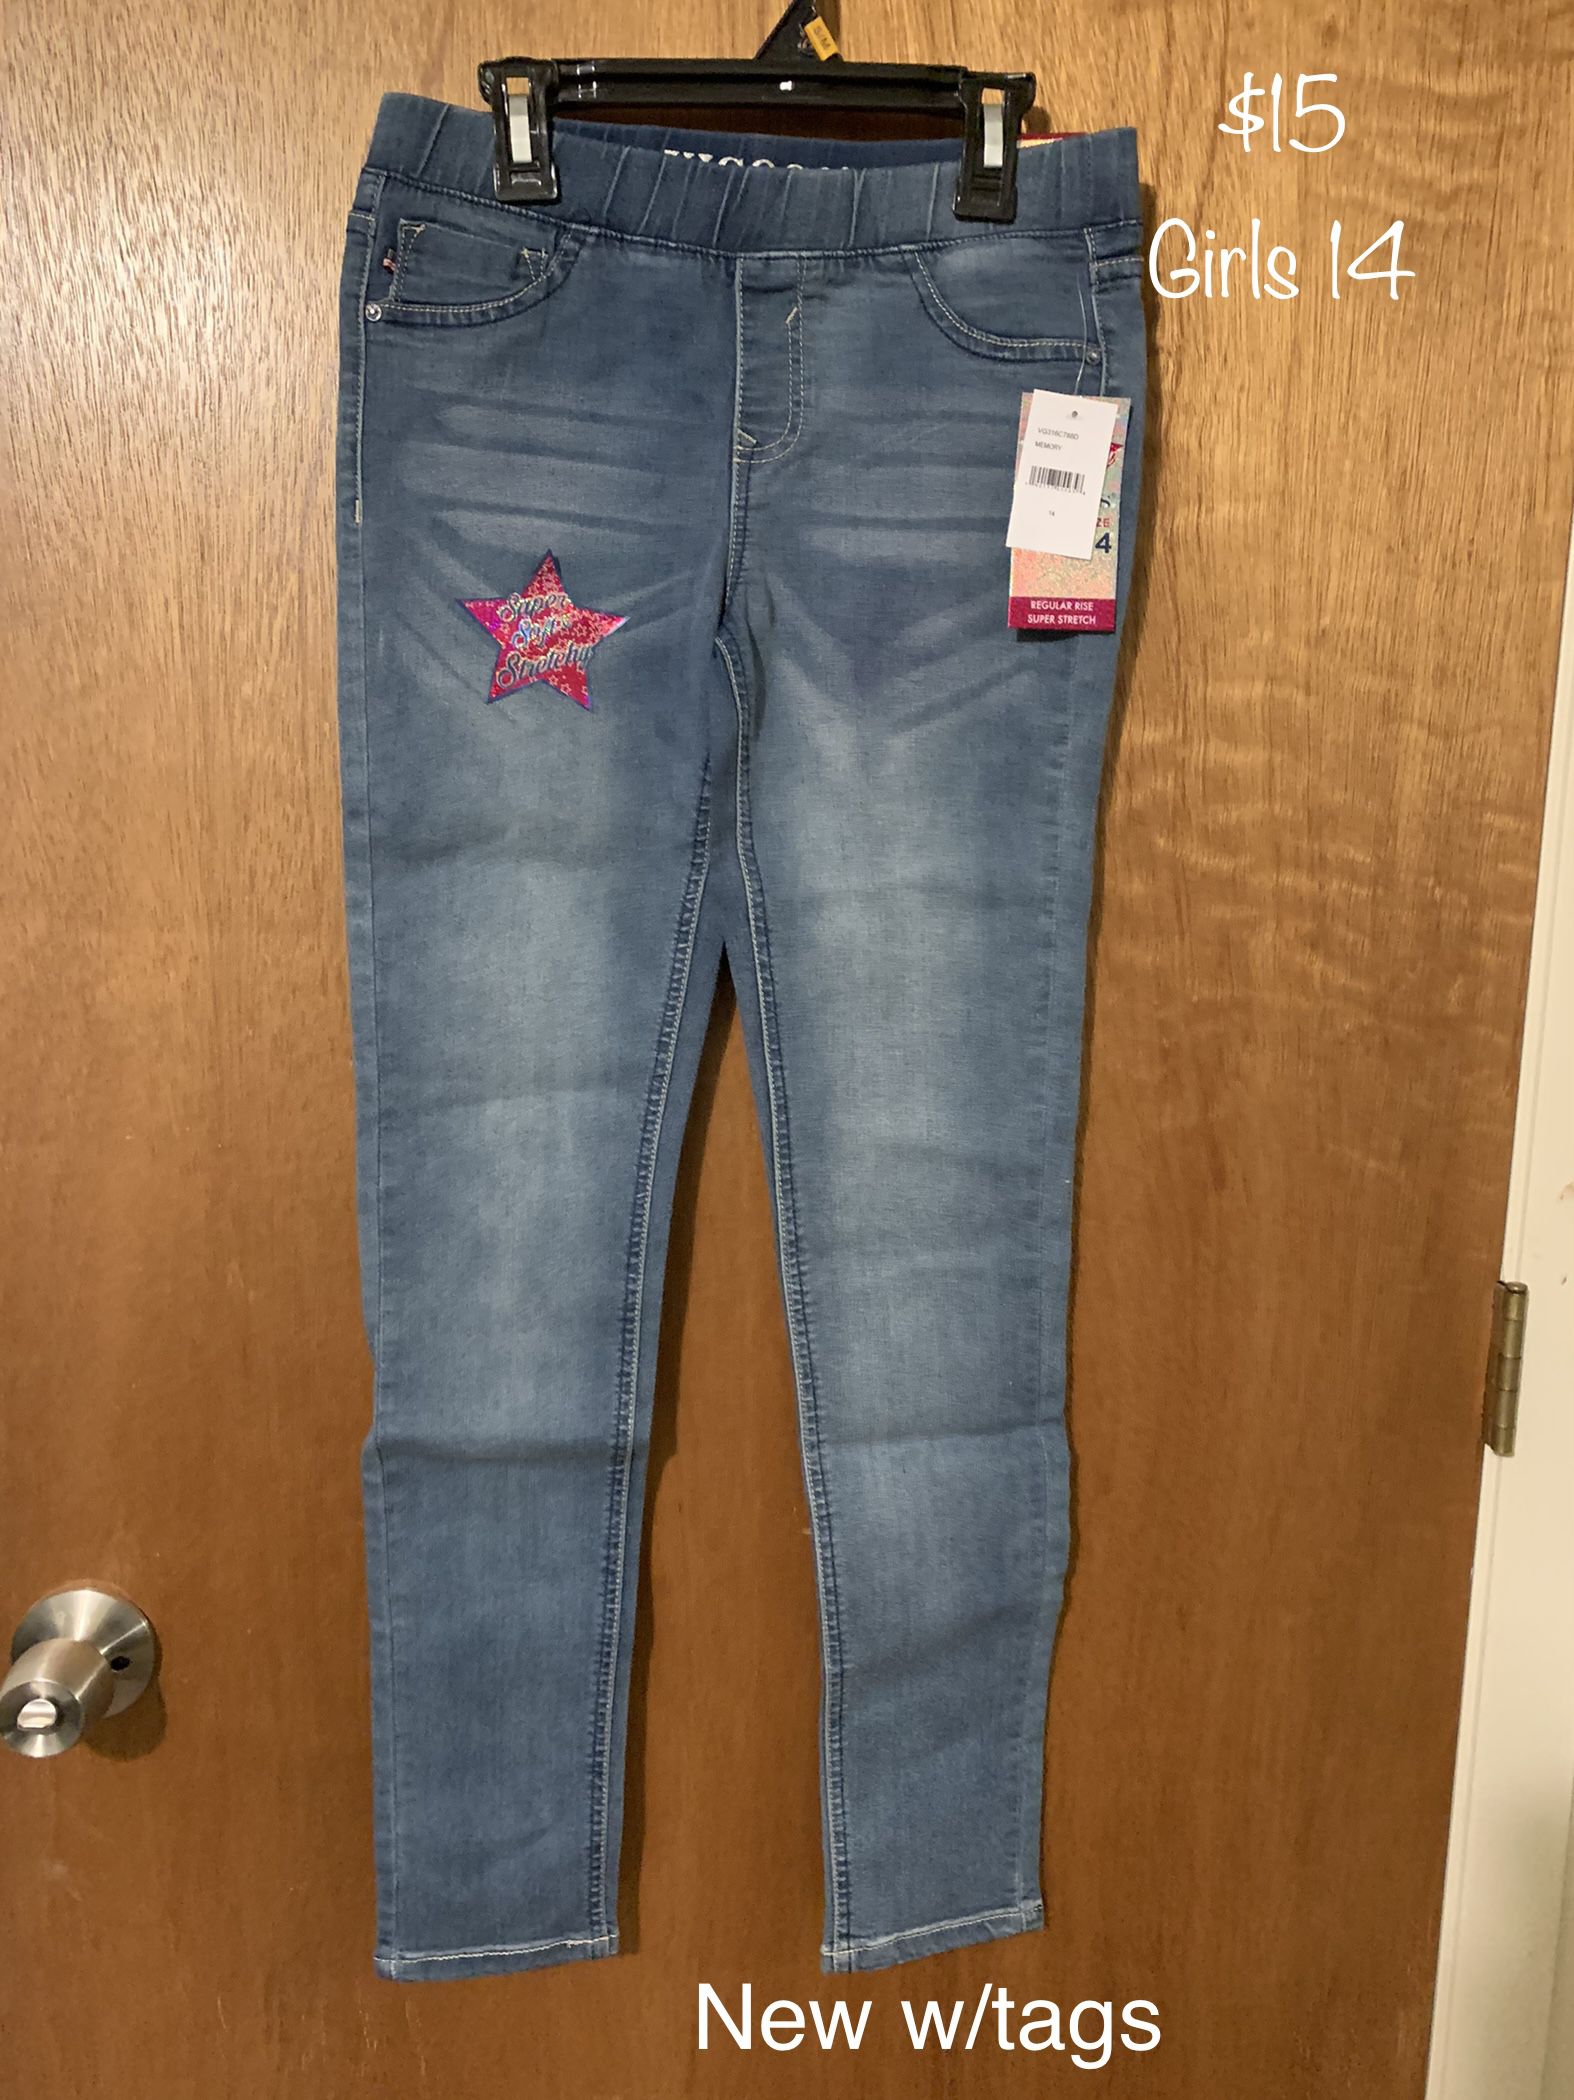 VIGOSS  Skinny Jeans - Girls 14